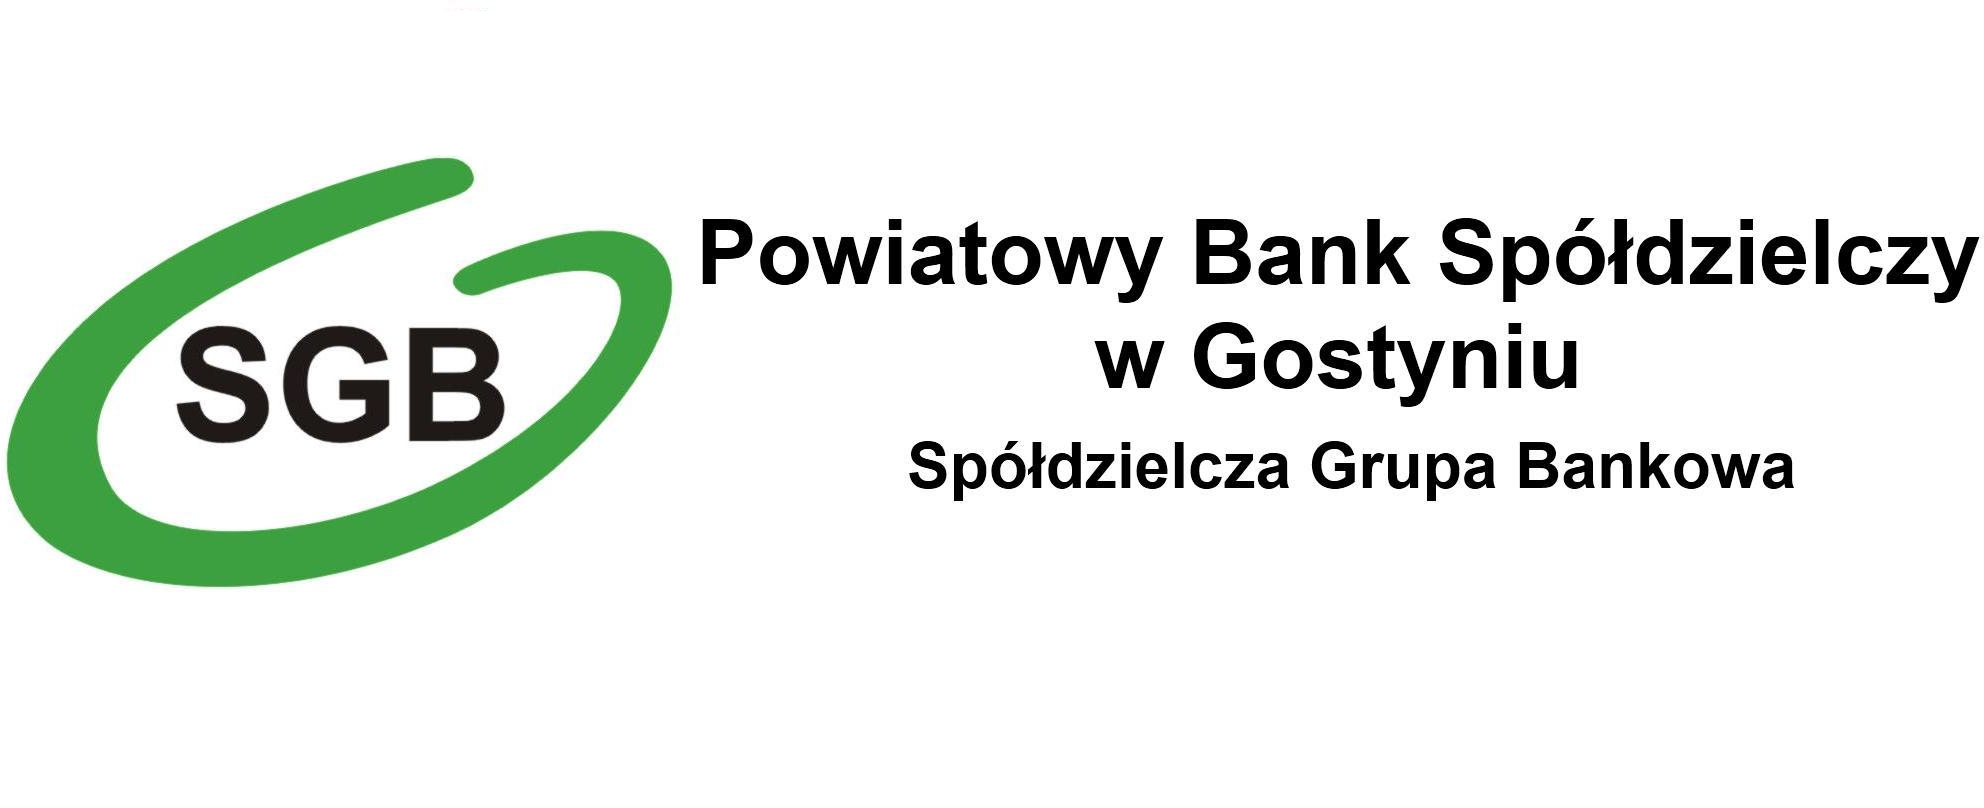 Zastrzeganie i aktywacja Kart - Powiatowy Bank Spółdzielczy w Gostyniu